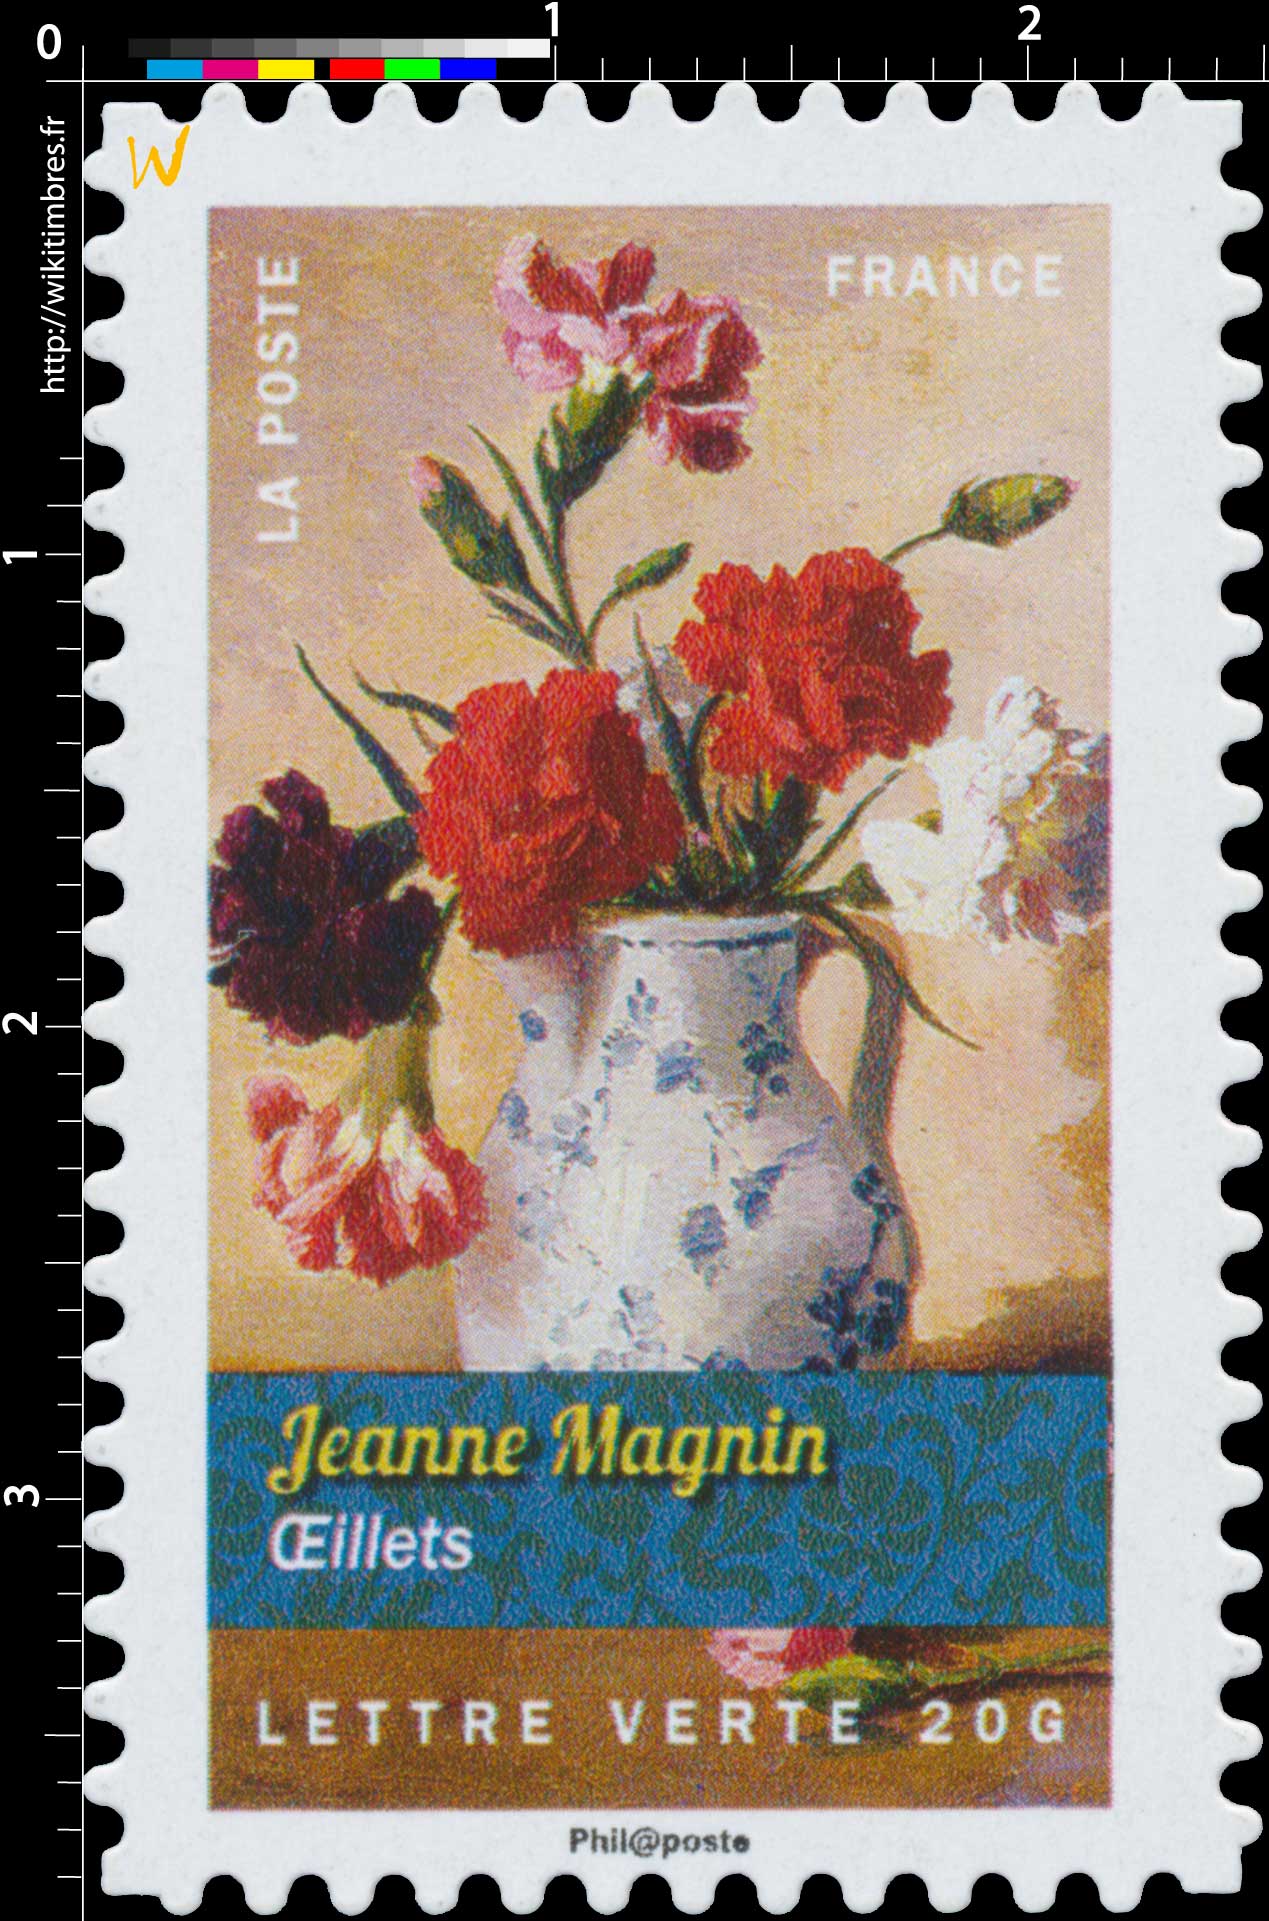 2015 Jeanne Magnin - Oeillets